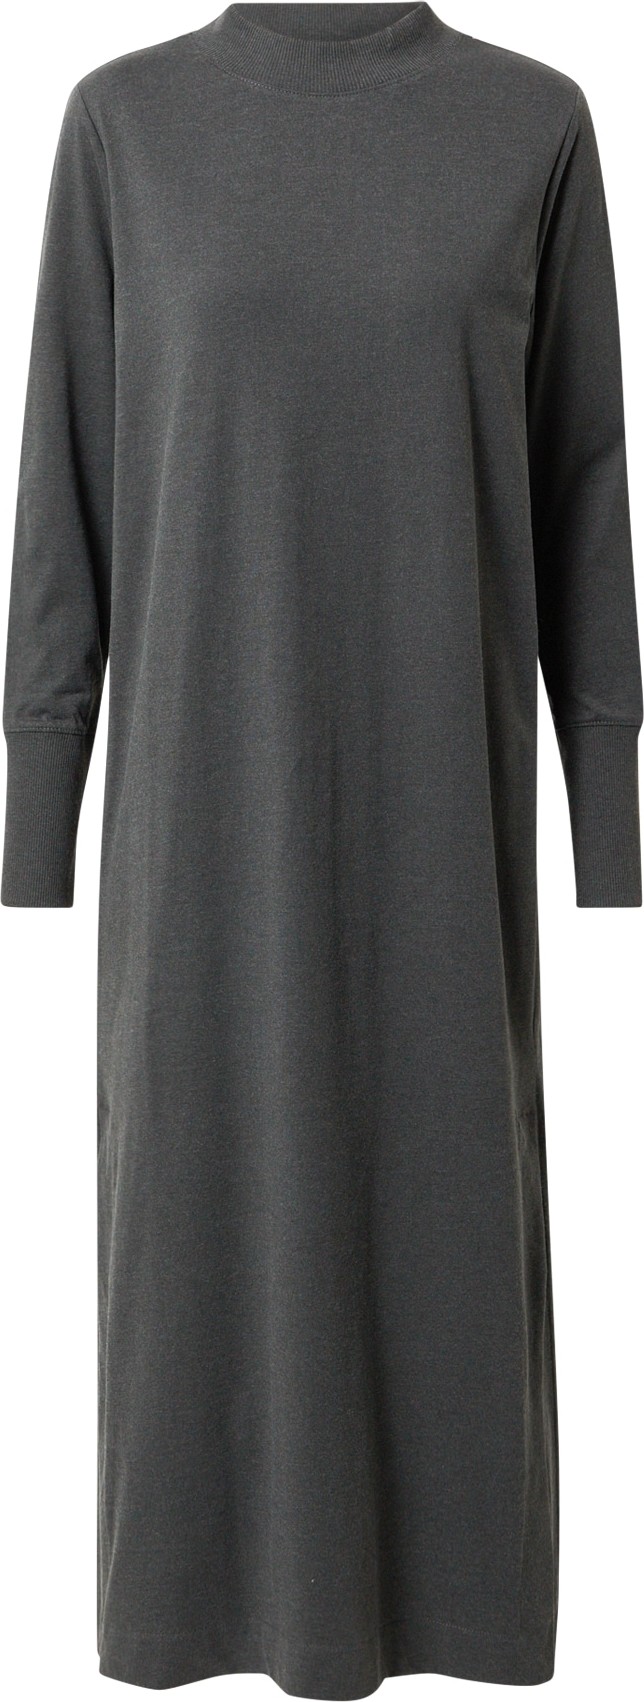 ESPRIT Úpletové šaty tmavě šedá